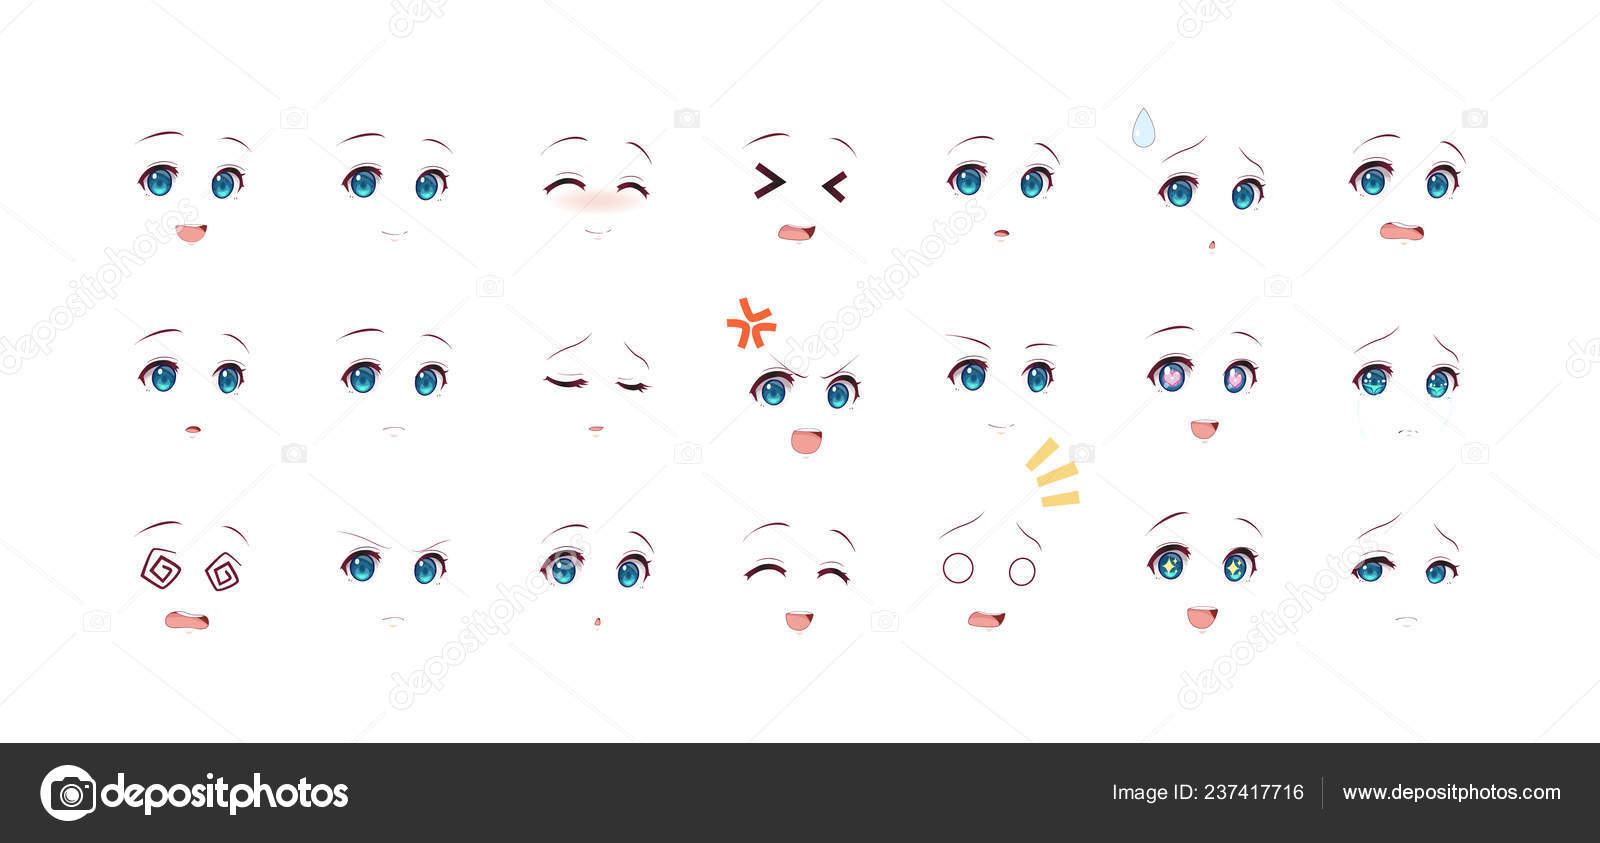 Emoções olhos de anime (mangá) meninas imagem vetorial de Apoev© 237541618